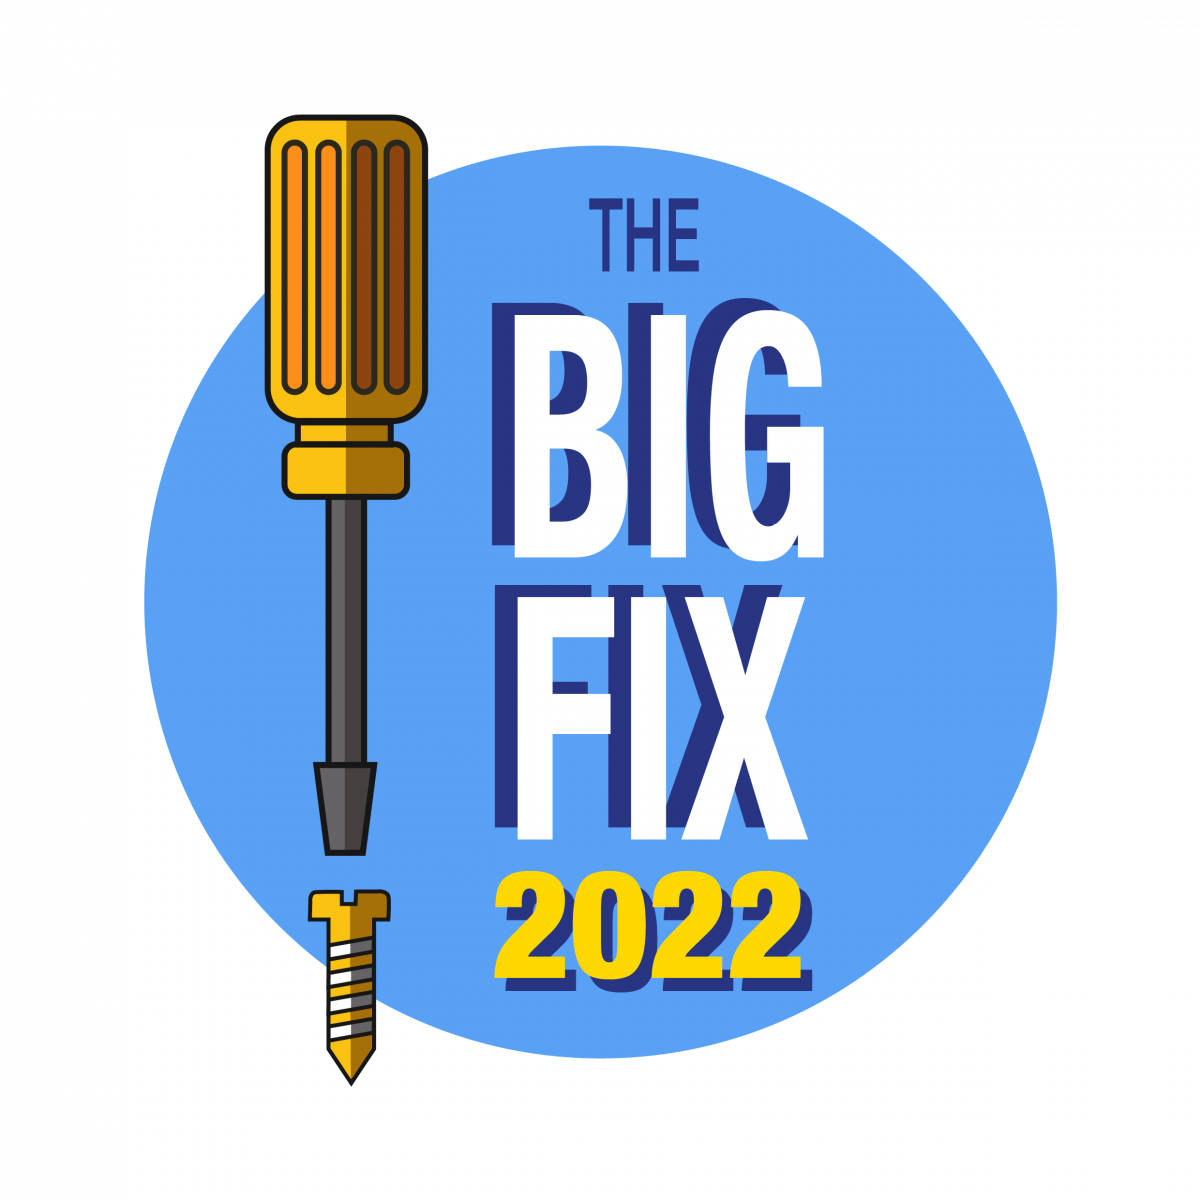 Penrith Repair Cafe: The Big Fix 2022